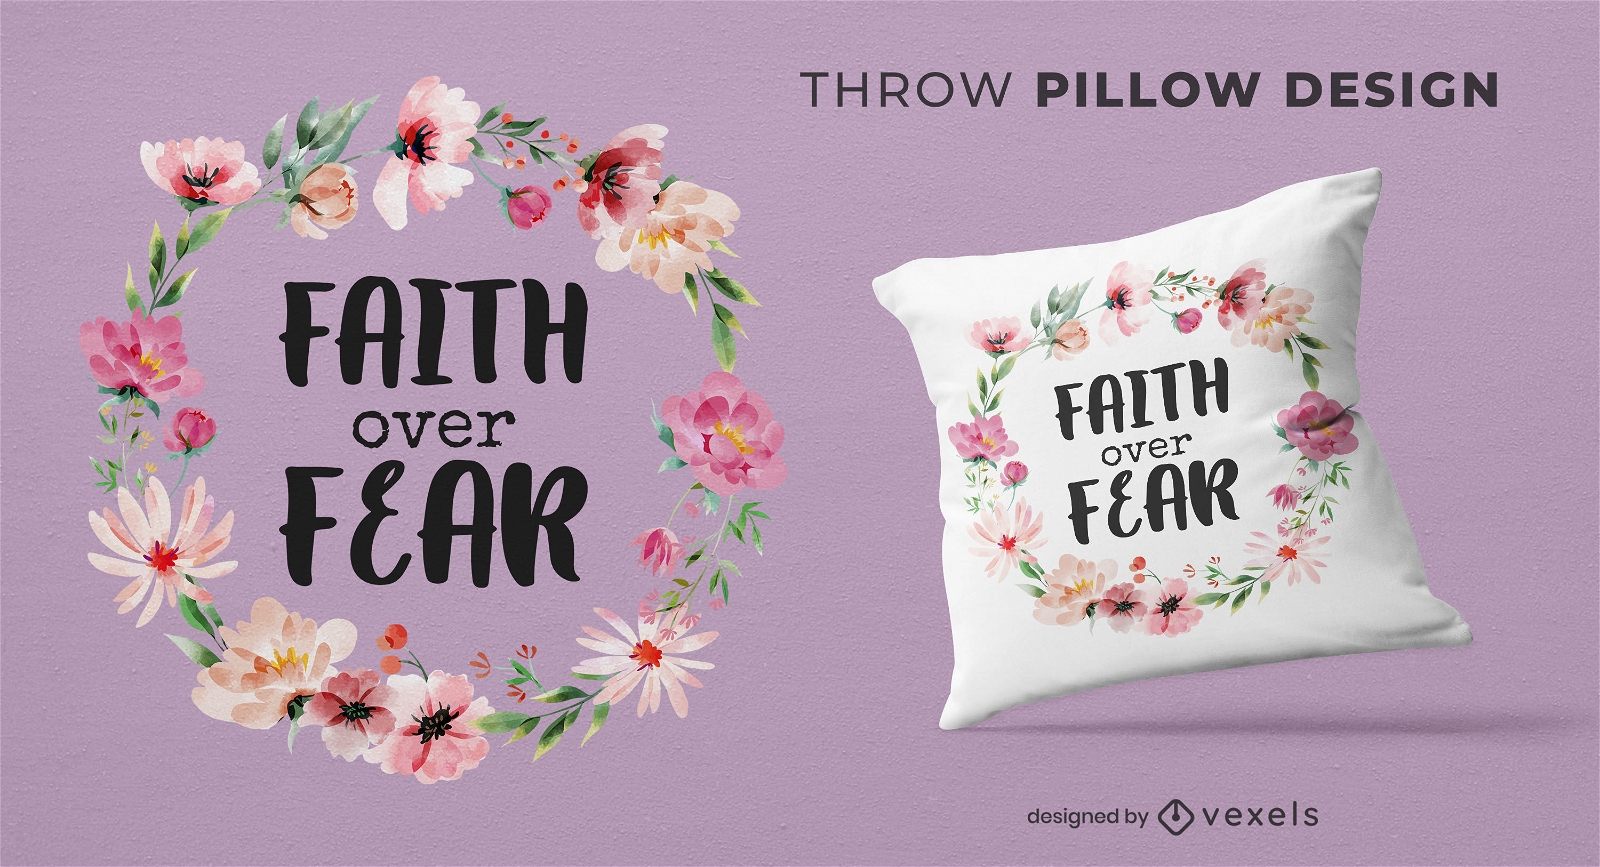 Fe sobre el diseño floral de la almohada del tiro del miedo